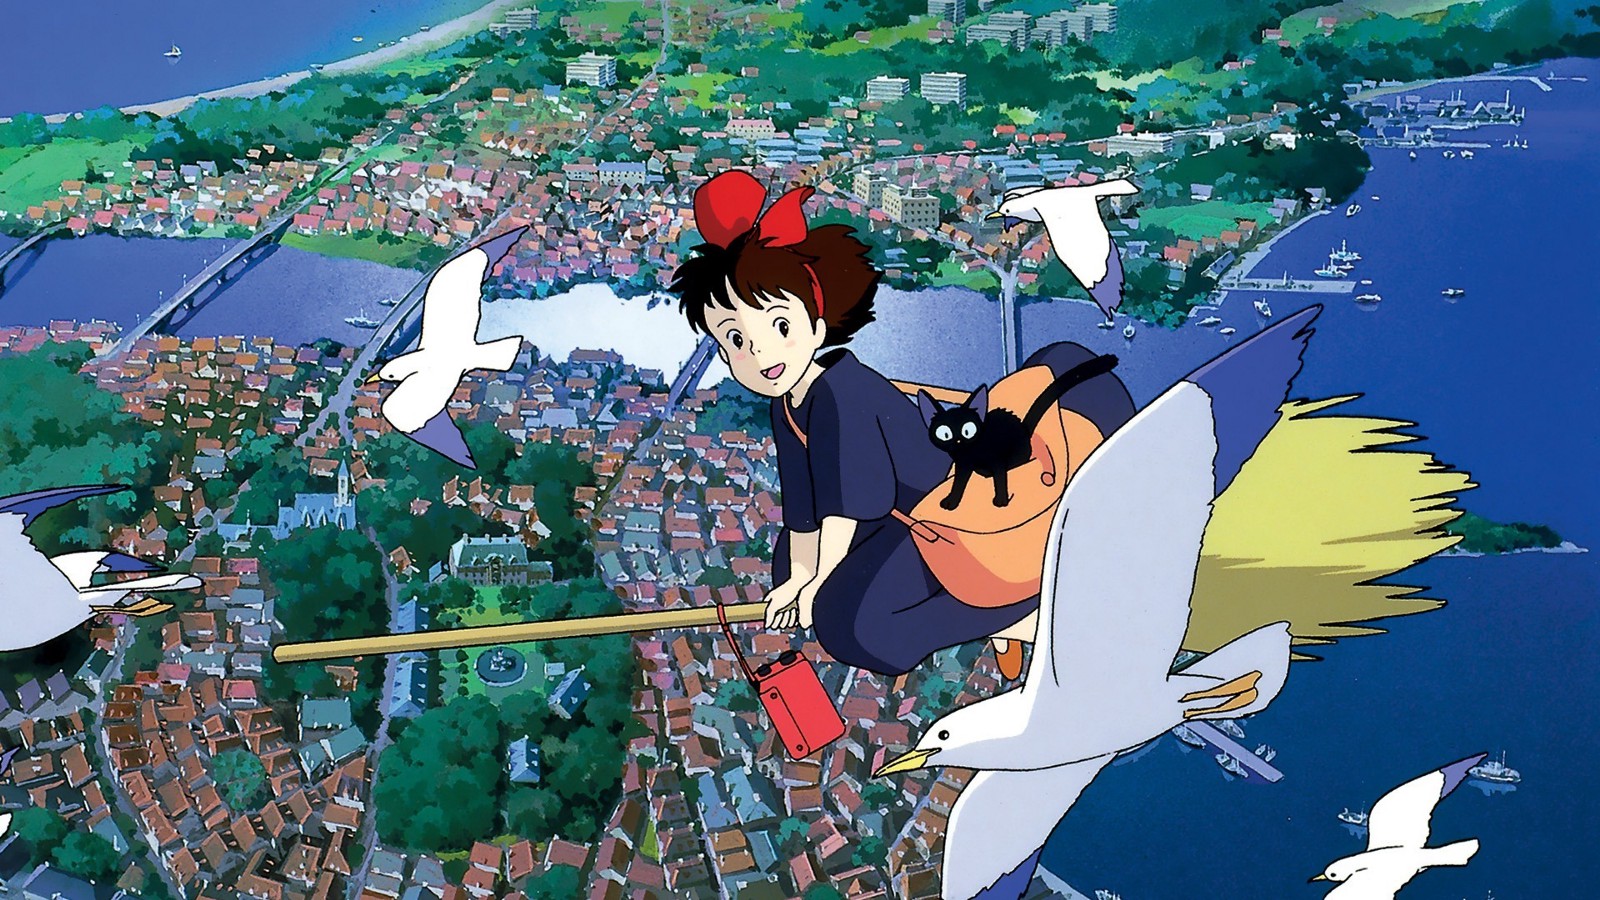 فیلم ها و شخصیت های دوست داشتنی استودیو انیمه سازی «جیبلی» (Ghibli) در سراسر جهان مخاطبان بسیاری را شیفته خود ساخته اند.